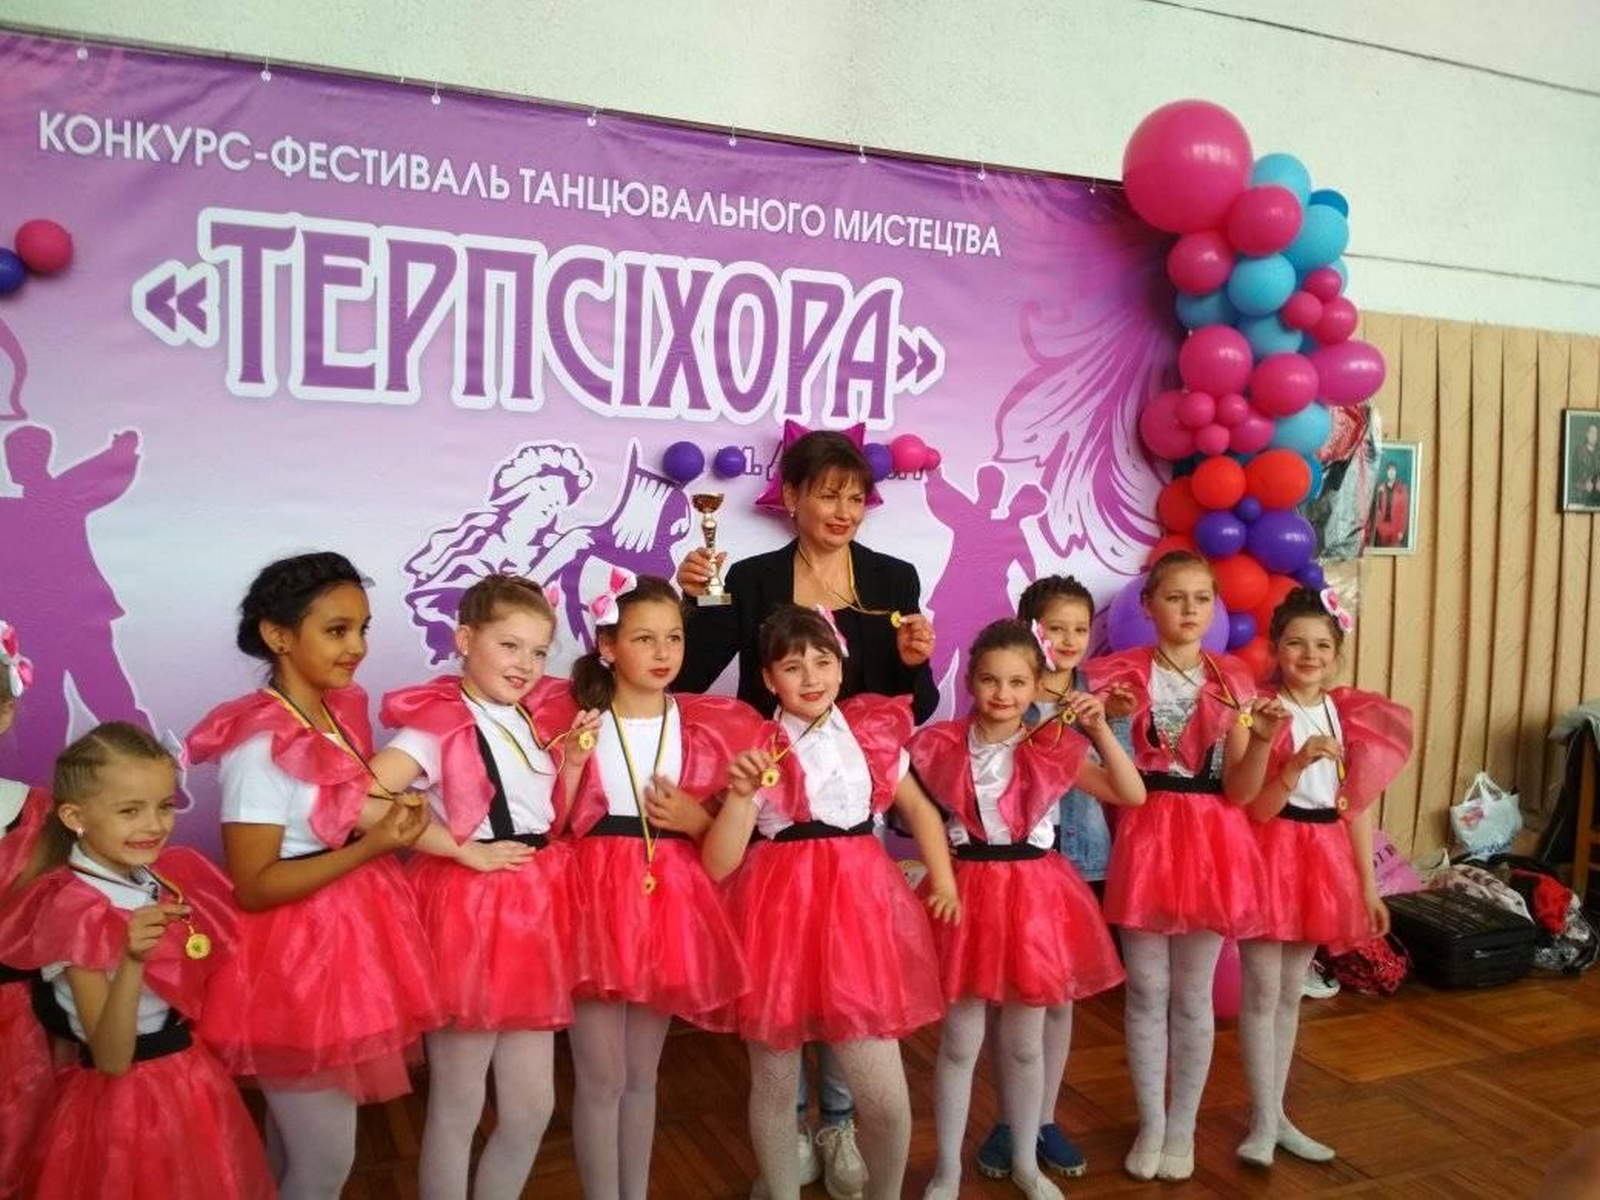 На конкурсі-фестивалі танцювального мистецтва «Терпсіхора»